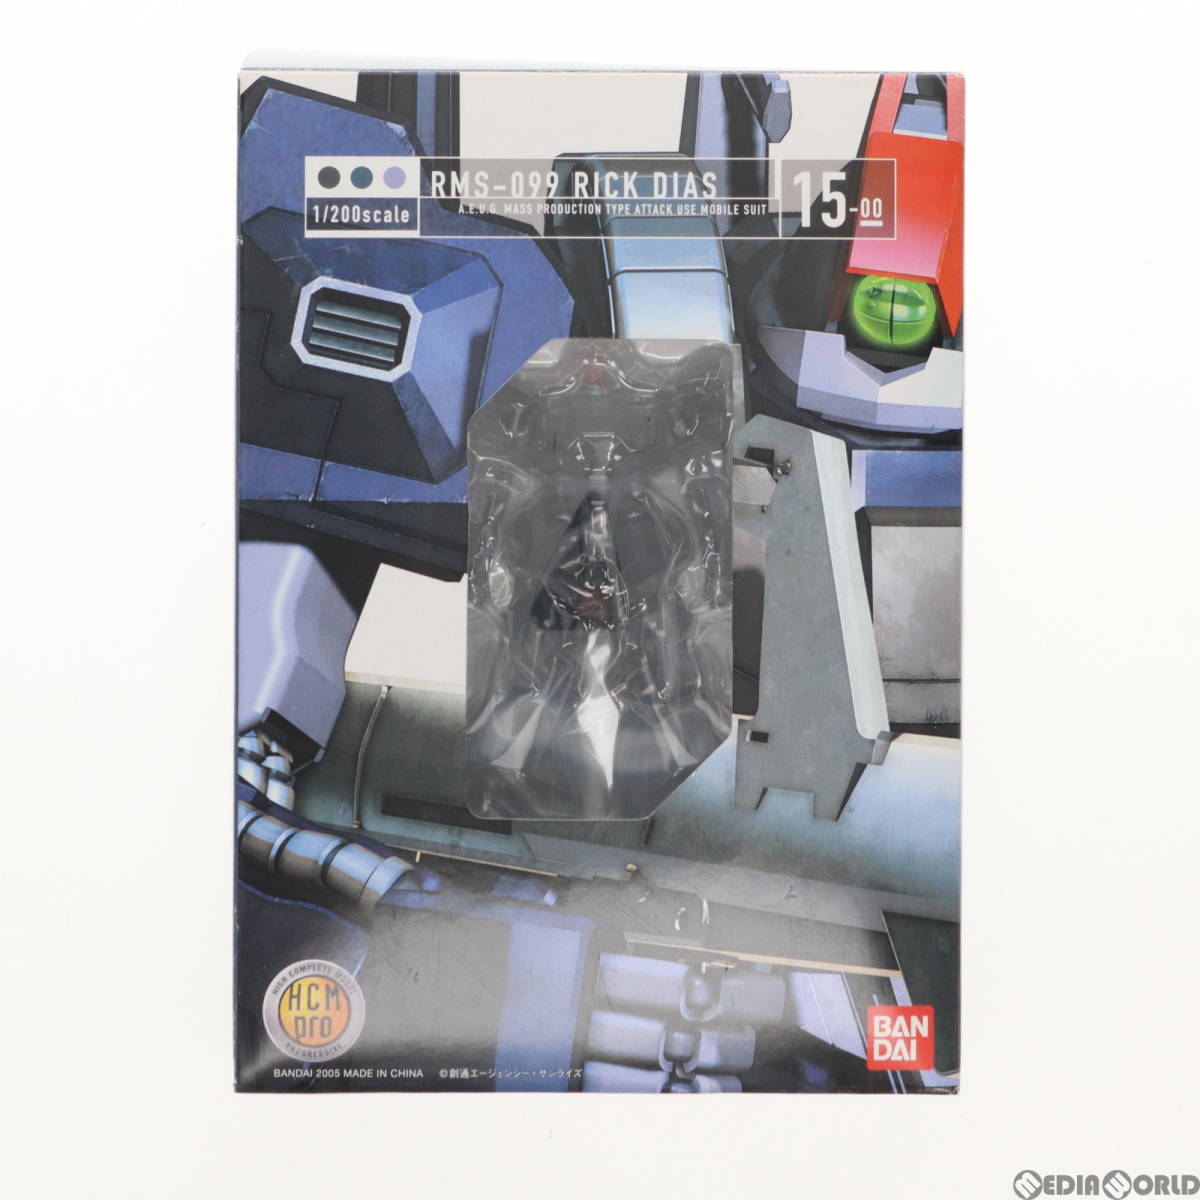 【中古】[FIG]HCM-Pro 15-00 RMS-099 リック・ディアス(ブラックカラー) 機動戦士Zガンダム -星を継ぐ者- 1/200 完成品 可動フィギュア バ_画像2